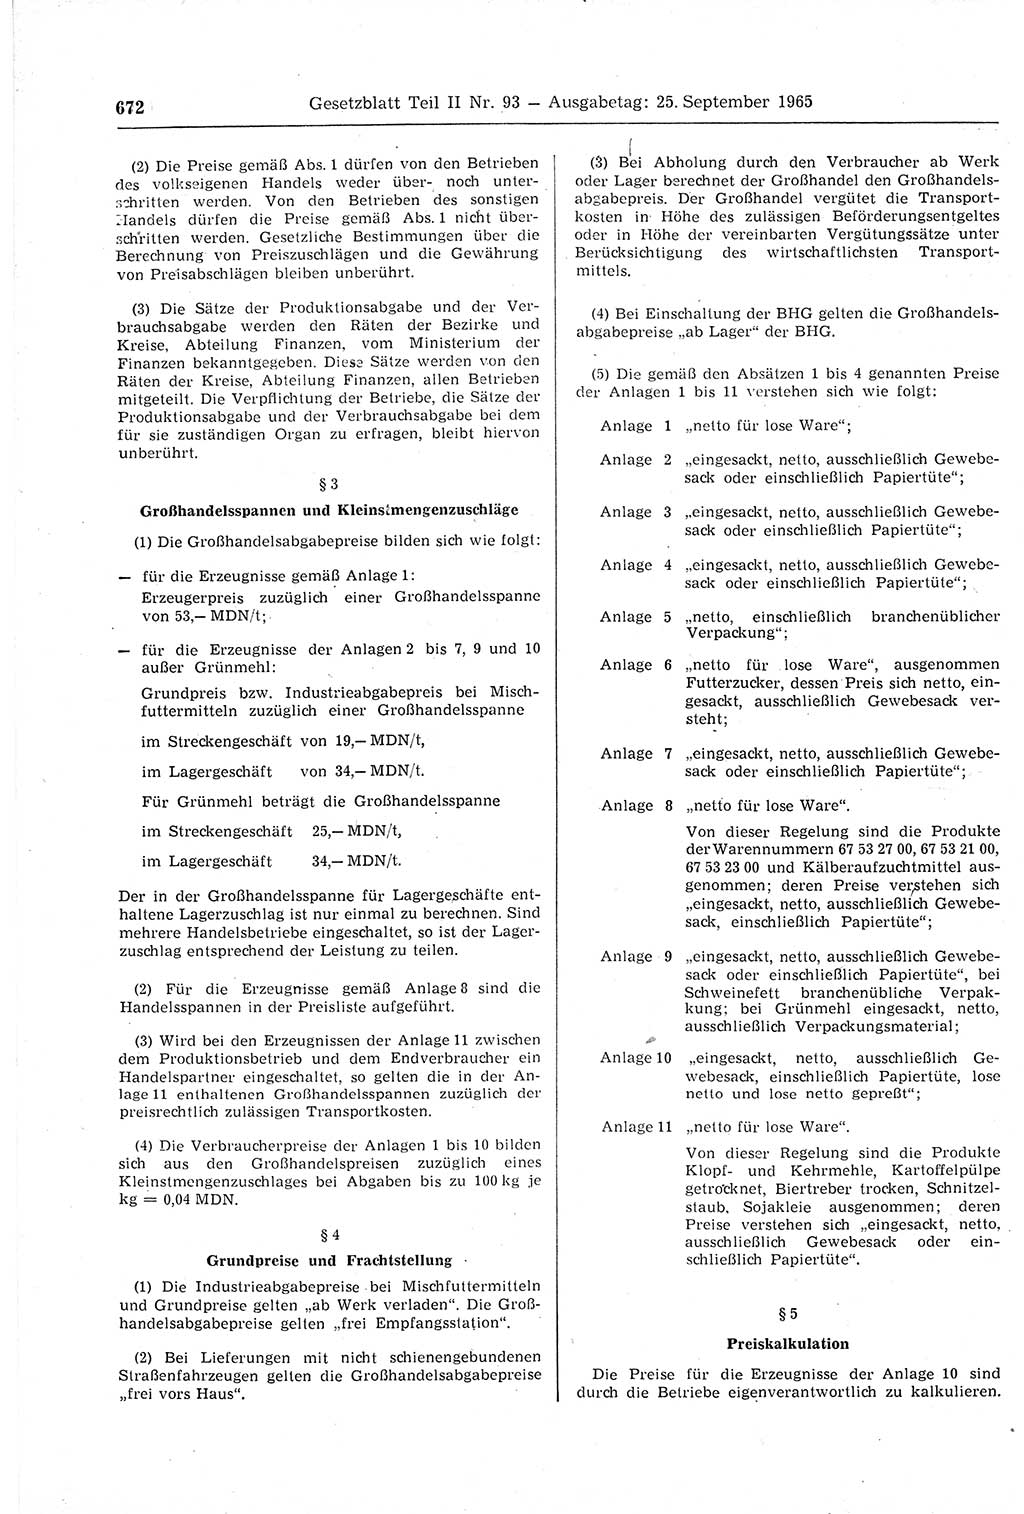 Gesetzblatt (GBl.) der Deutschen Demokratischen Republik (DDR) Teil ⅠⅠ 1965, Seite 672 (GBl. DDR ⅠⅠ 1965, S. 672)